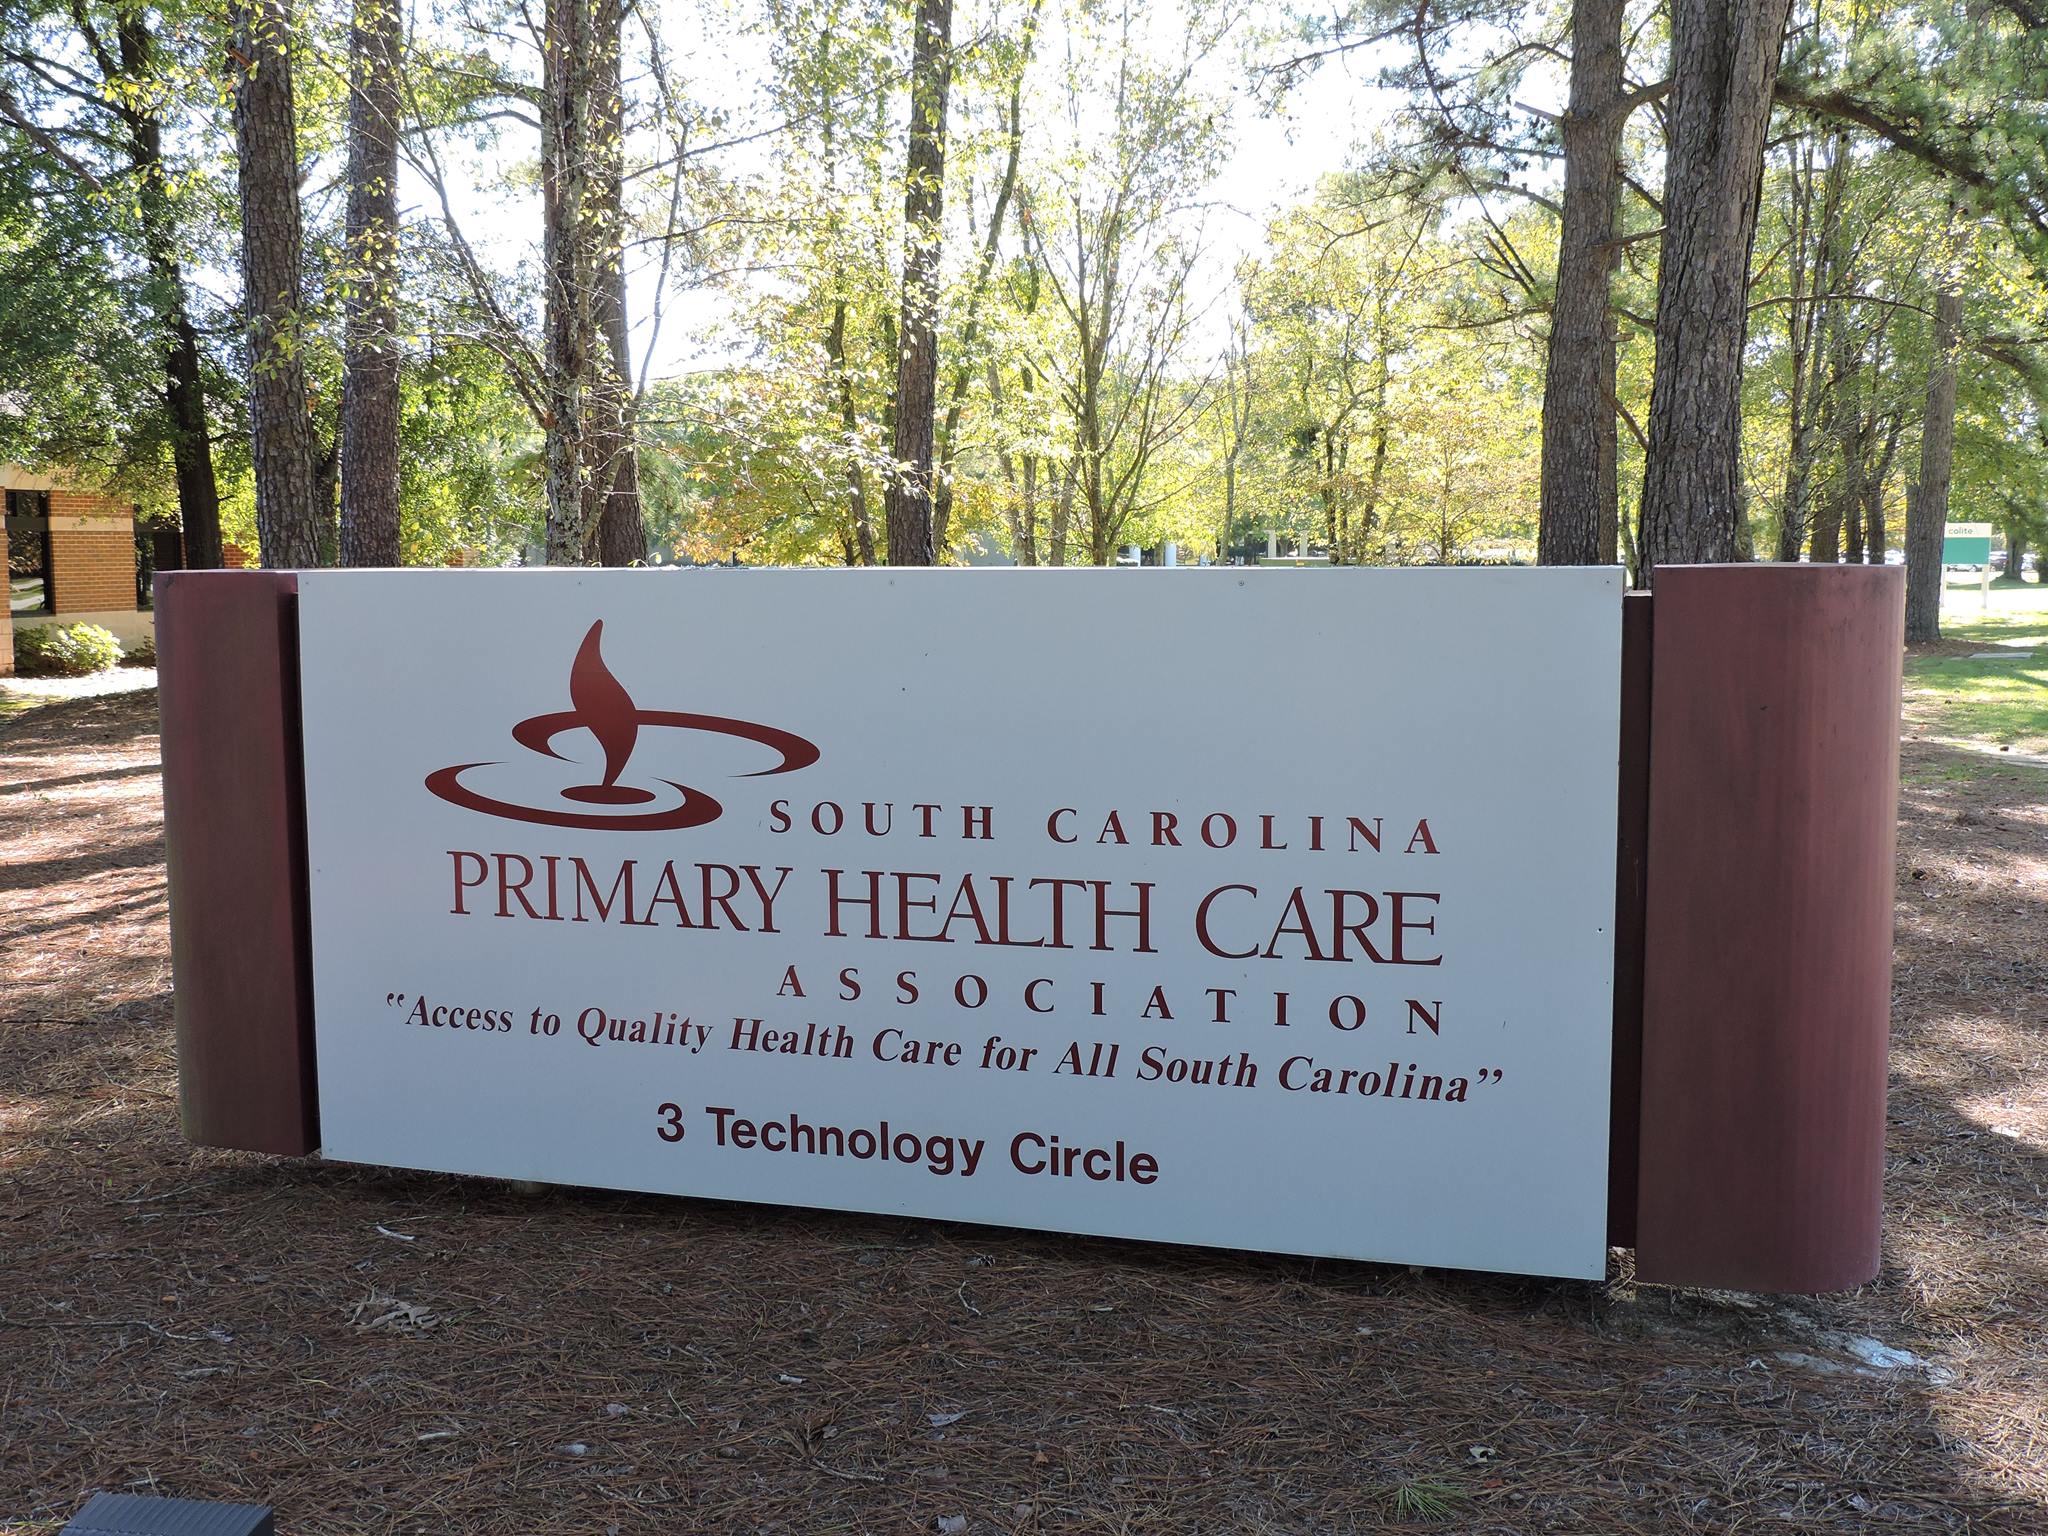 South Carolina Primary Health Care Association